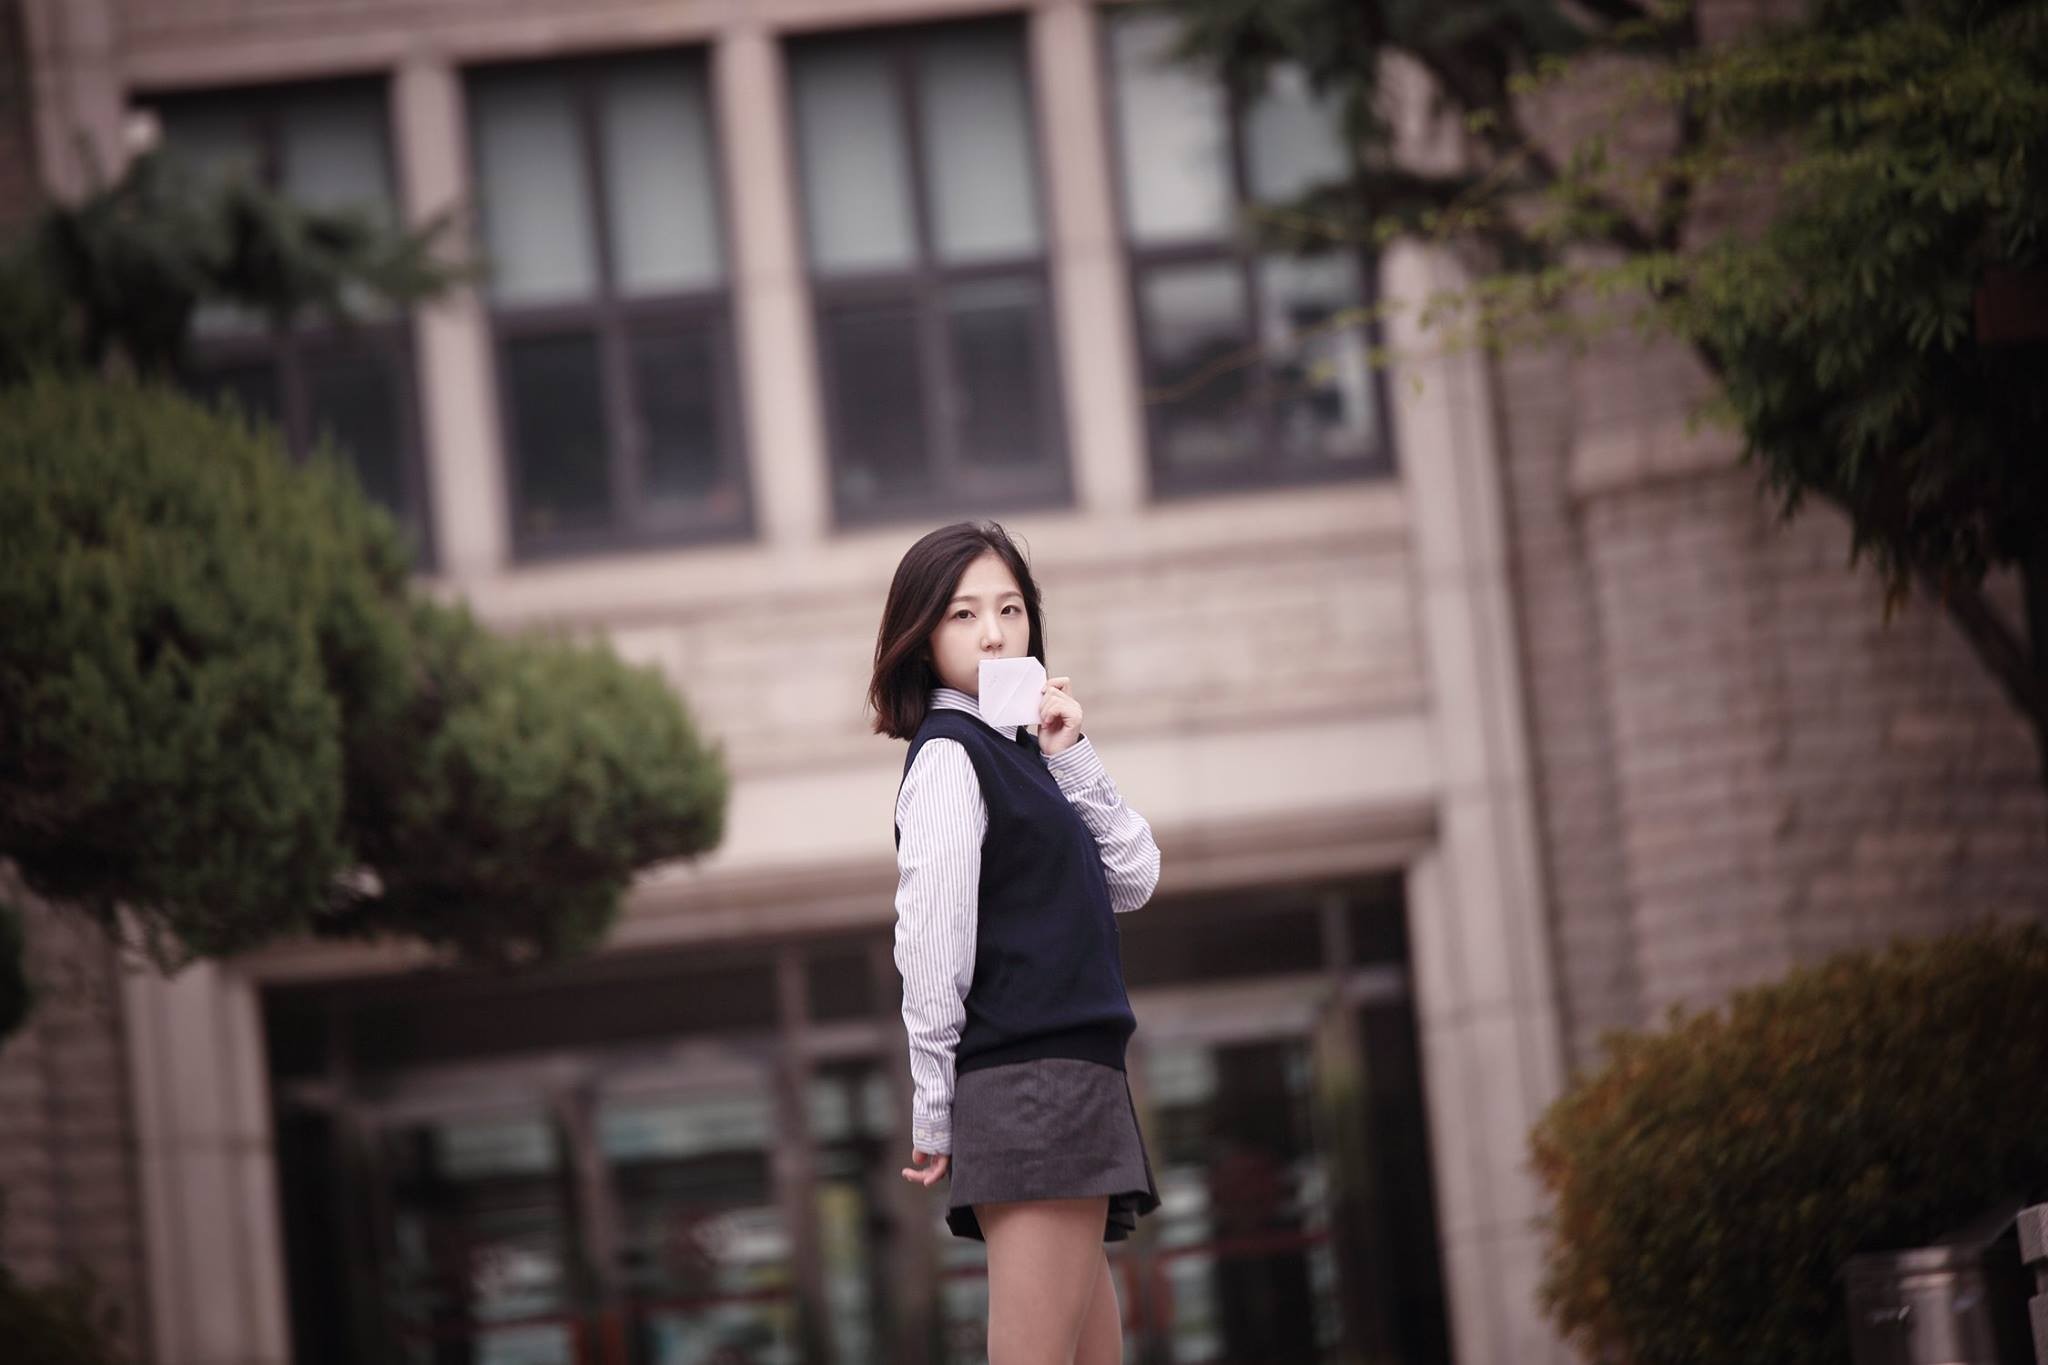 People 2048x1365 Asian model women women outdoors standing school uniform brunette letter